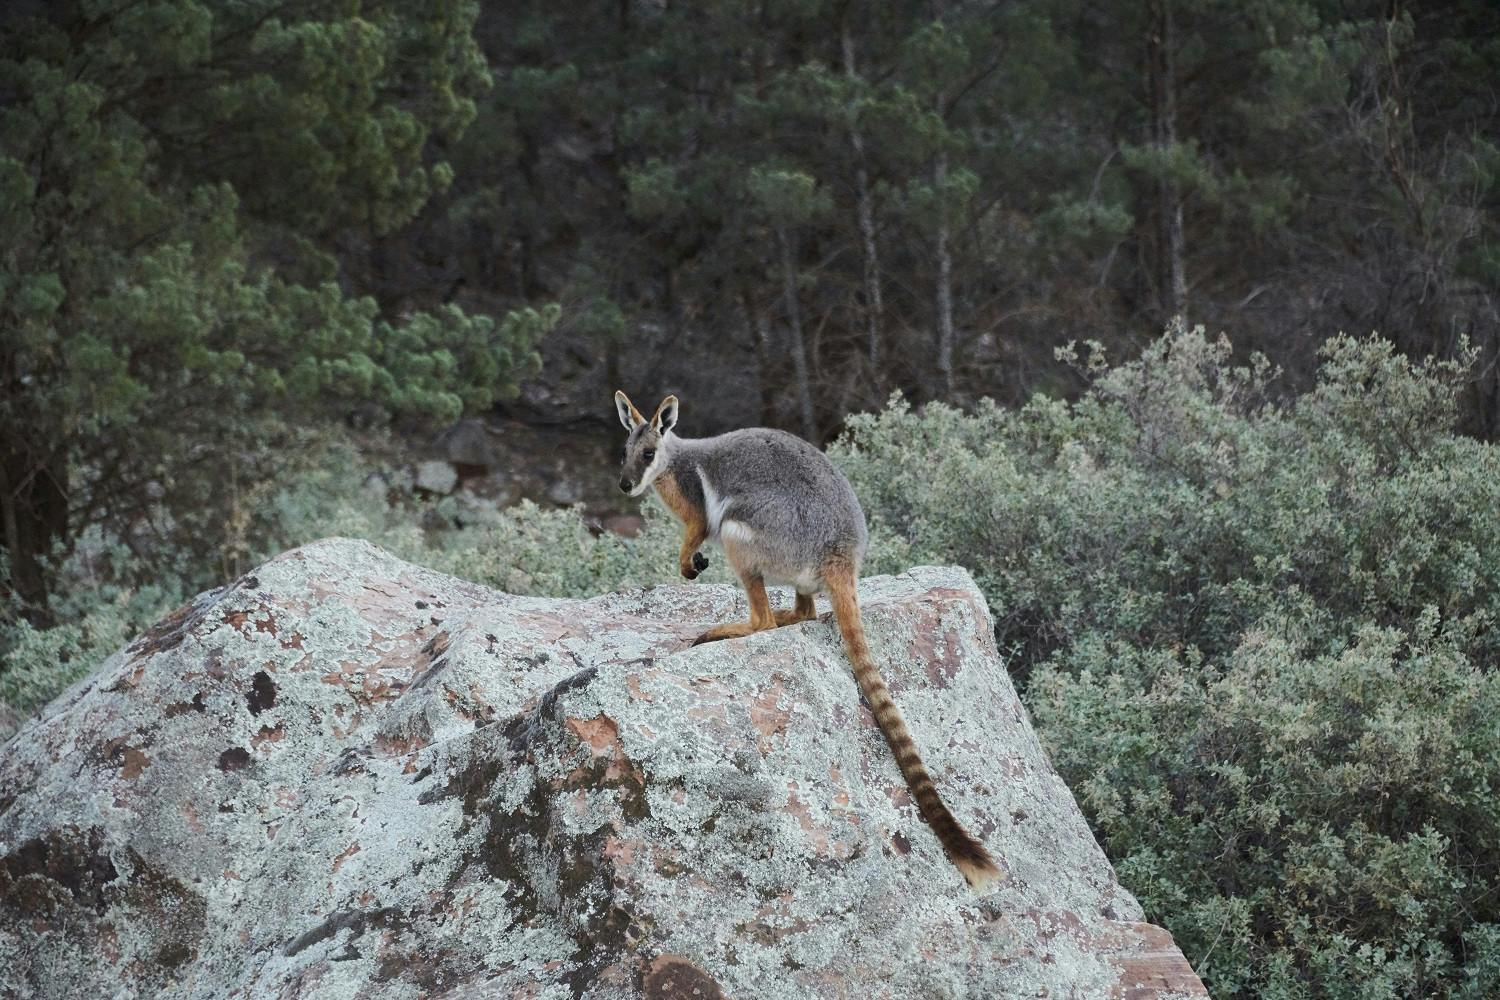 Australia by Steve McCurry